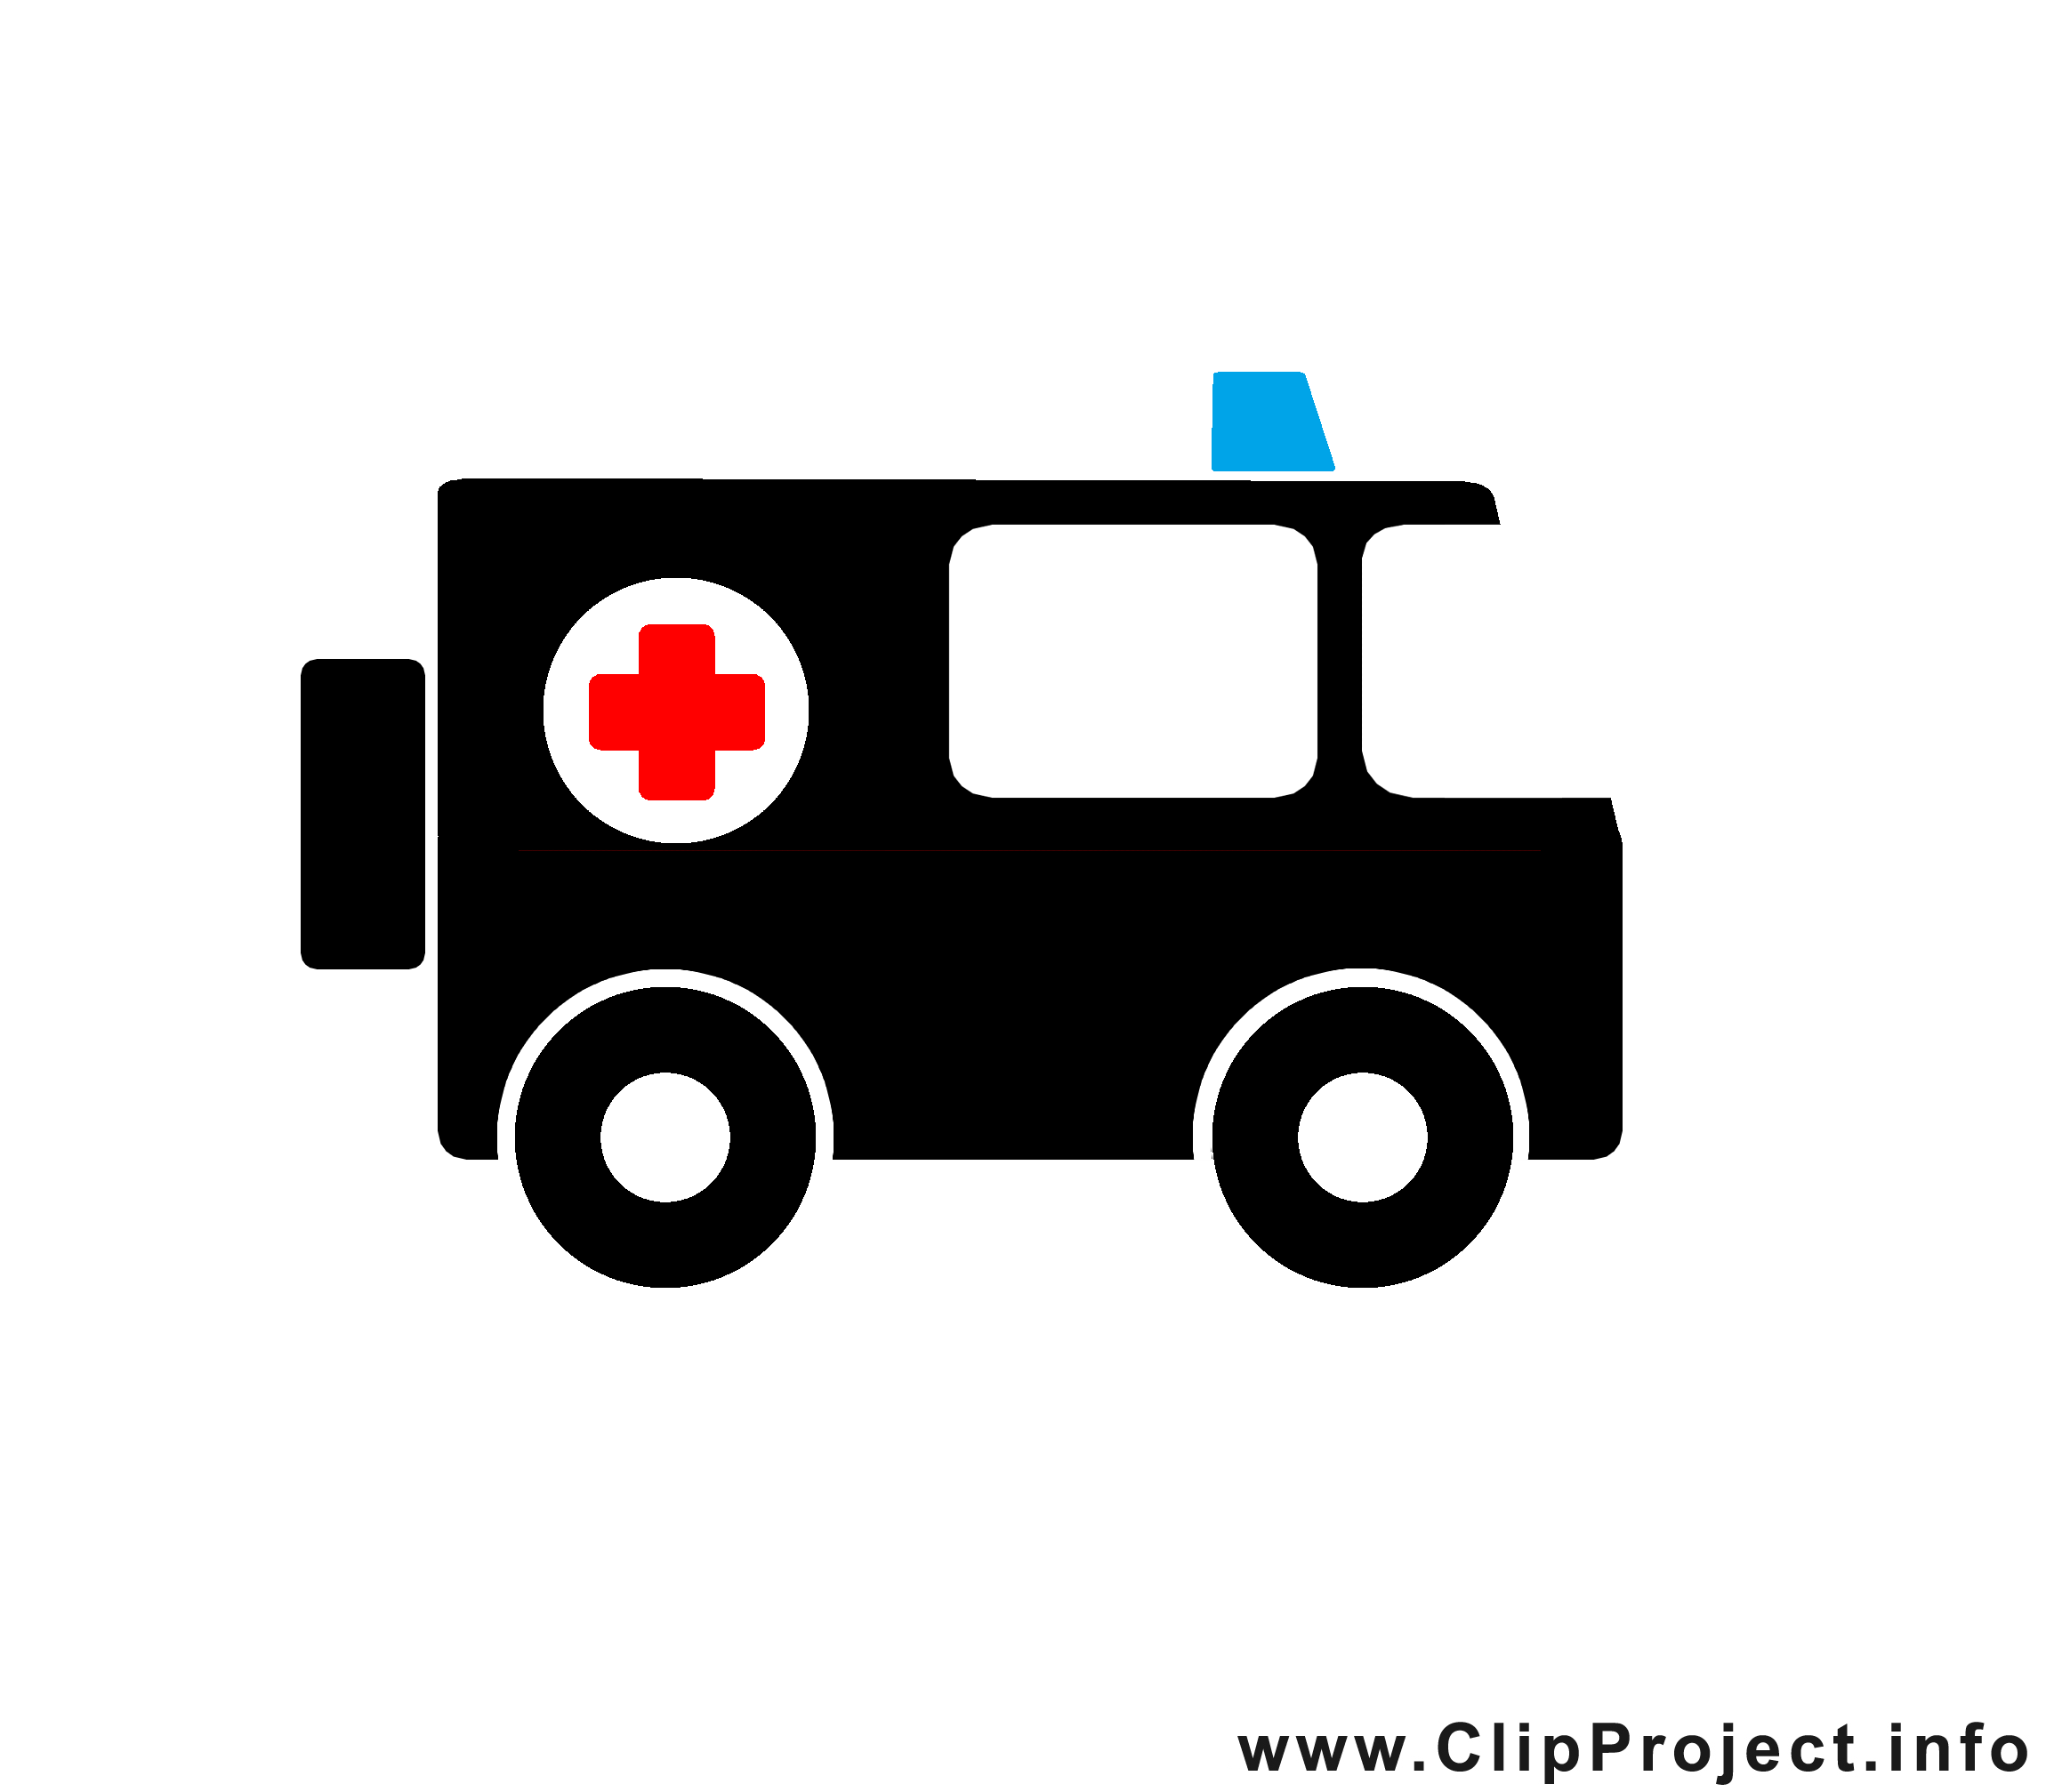 Ambulance dessins gratuits - Noir et blanc clipart